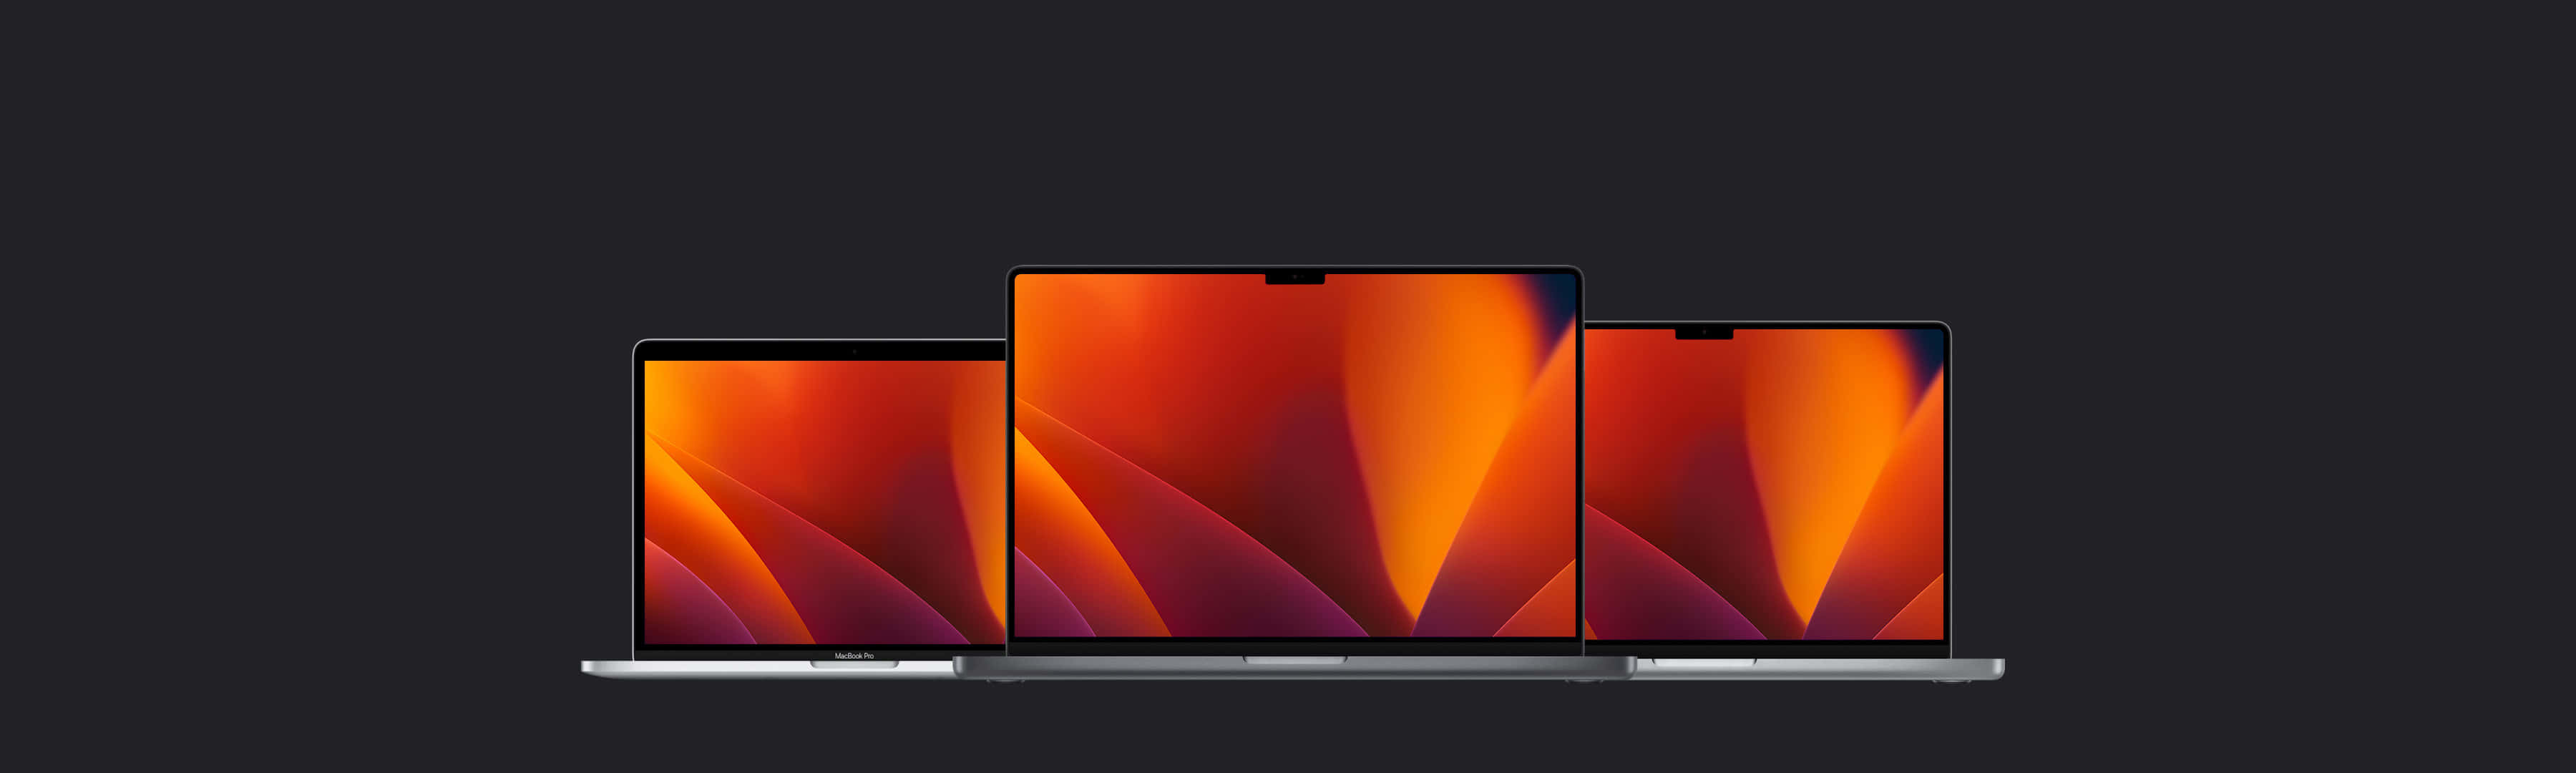 Derbrandneue Macbook - Die Neueste Leichte Laptop-technologie